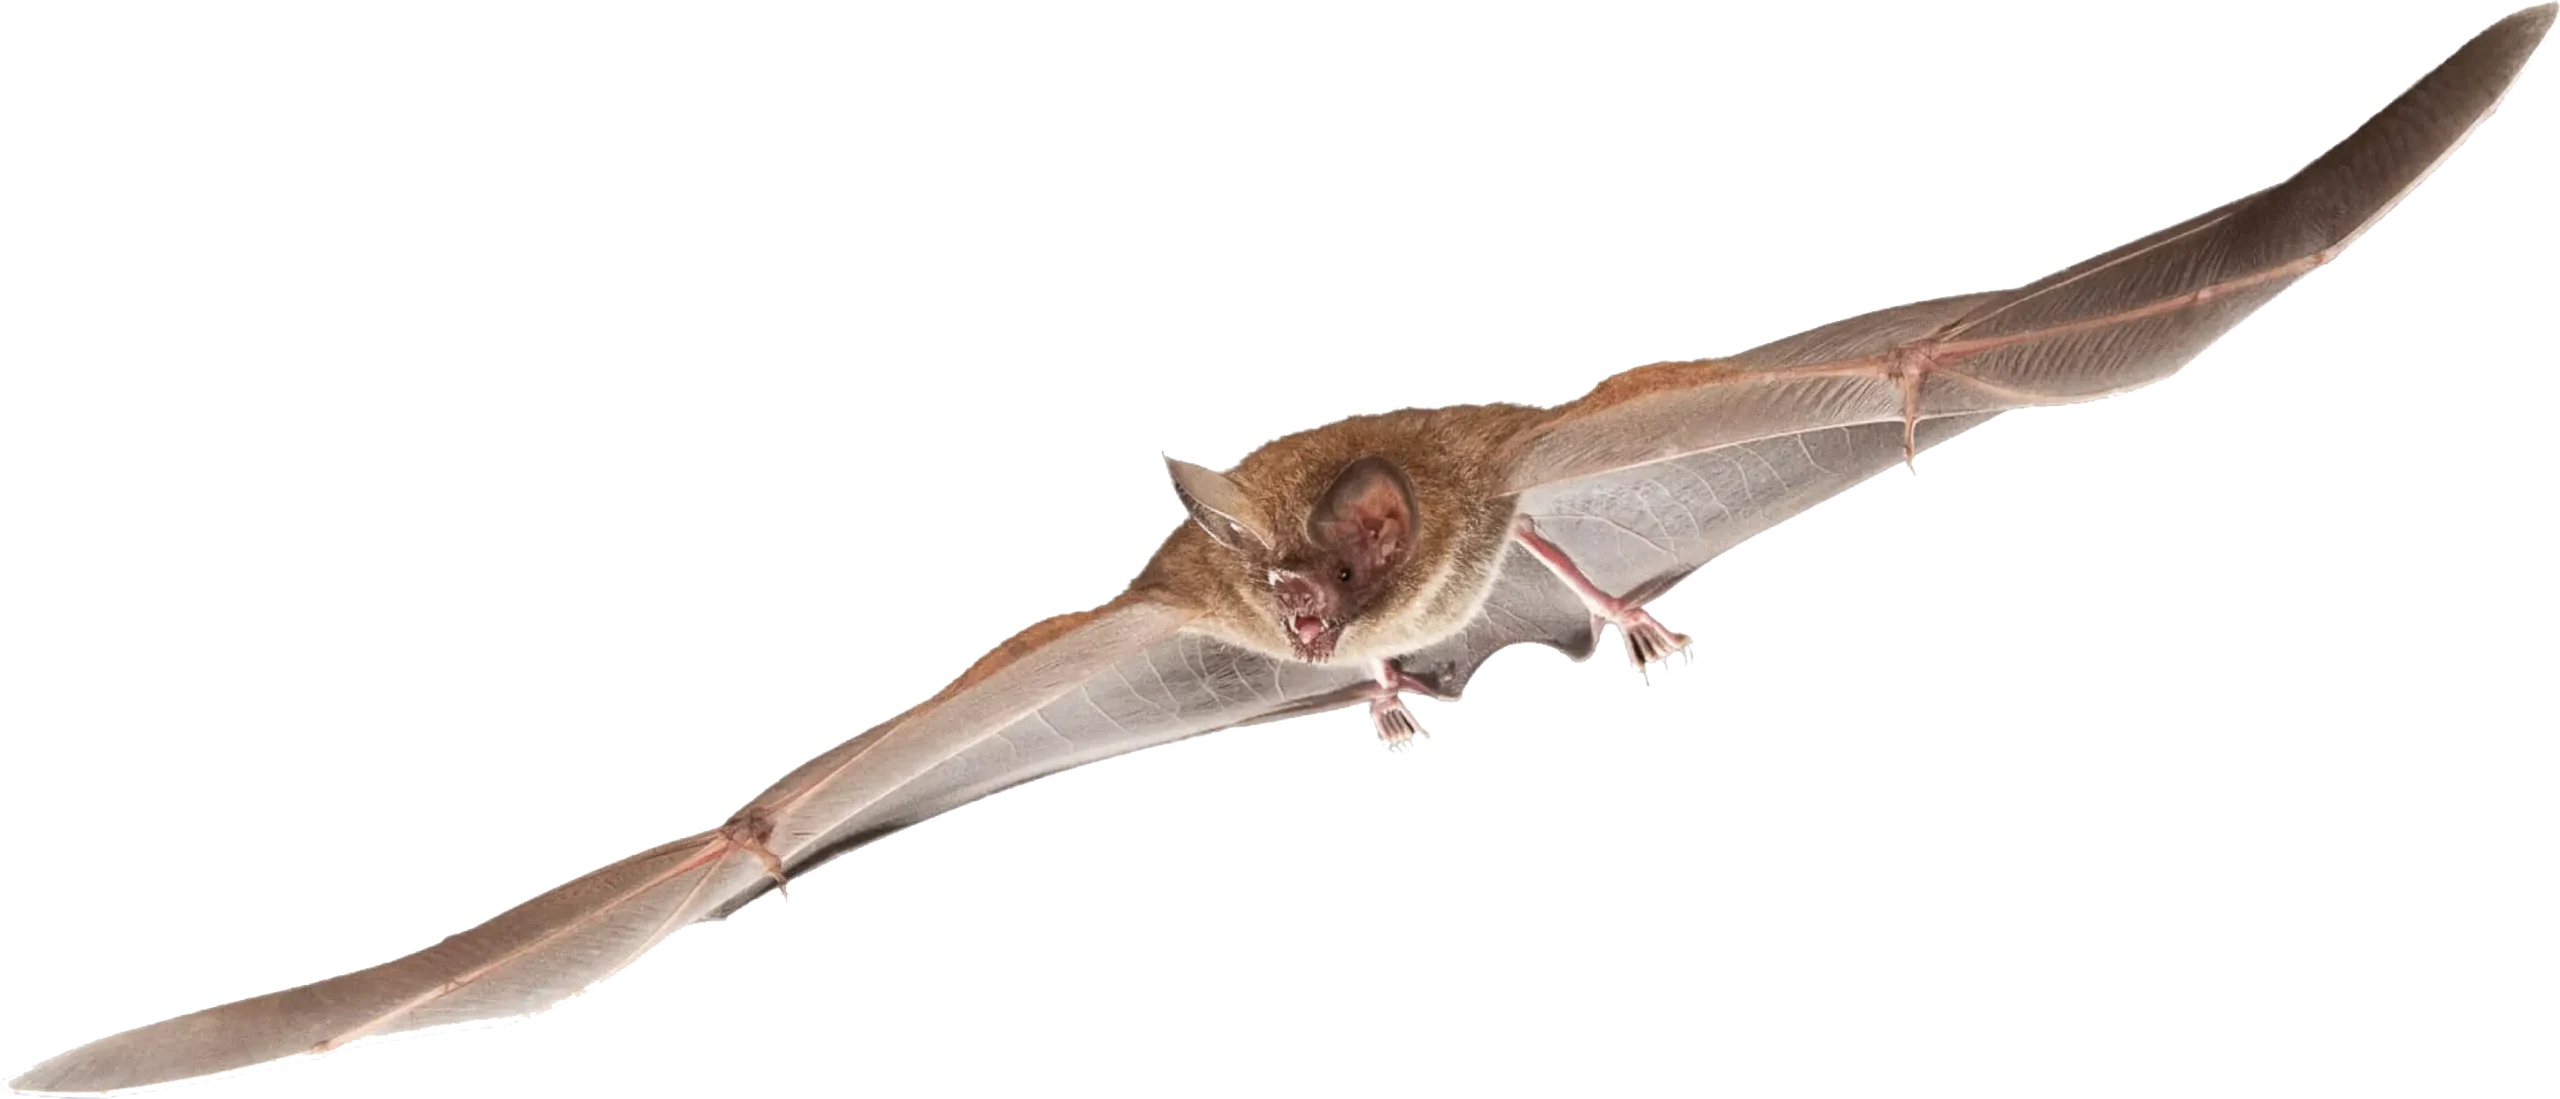 Fringe-Lipped Bat